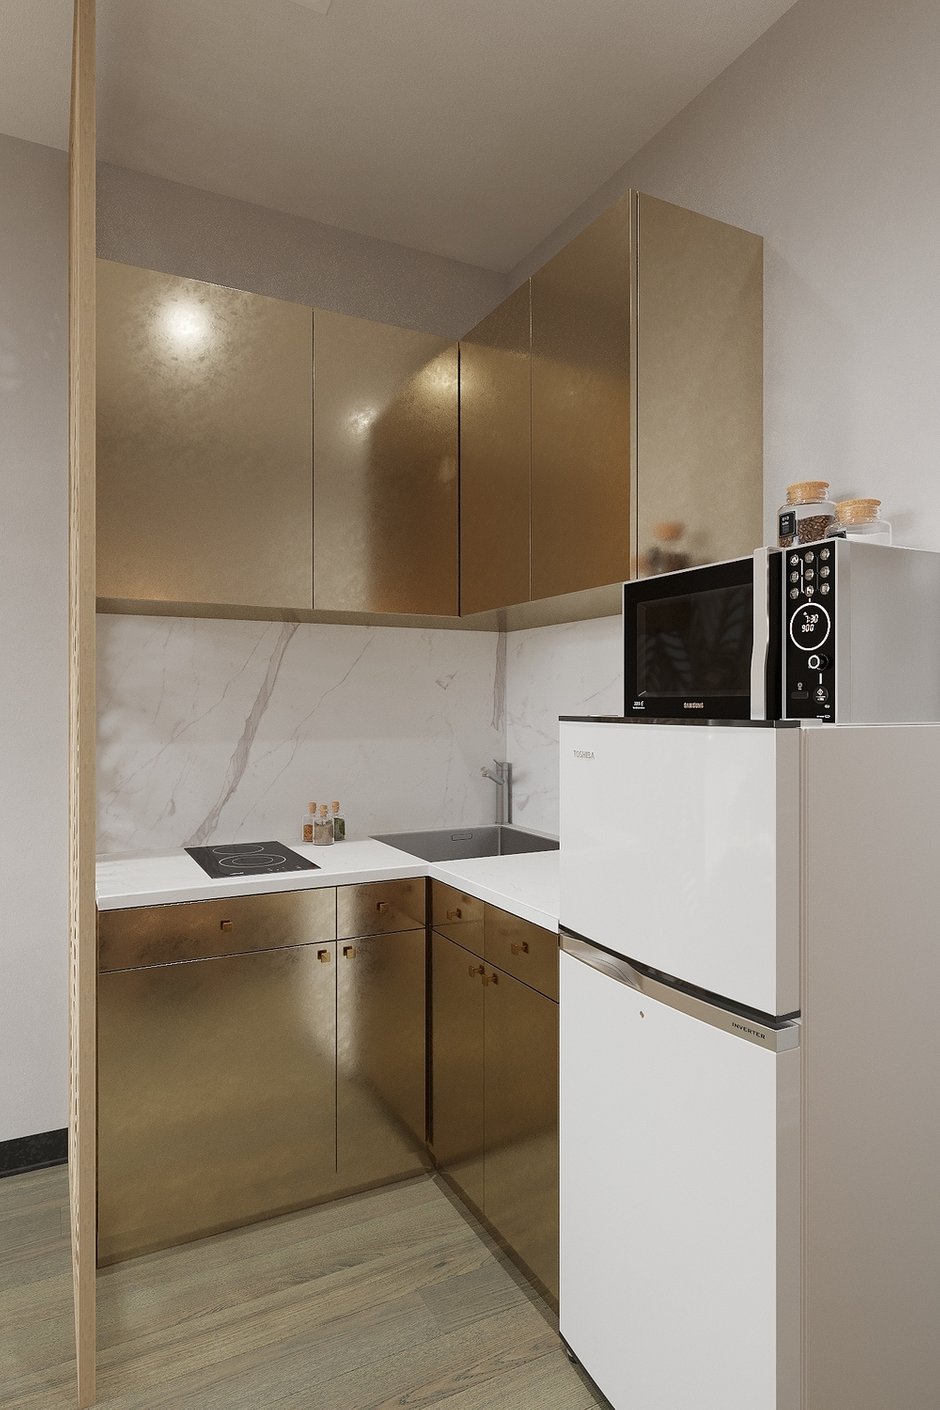 Кухня спроектирована с золотистыми фасадами, что делает ее не просто утилитарным предметом интерьера, но настоящим арт-объектом.